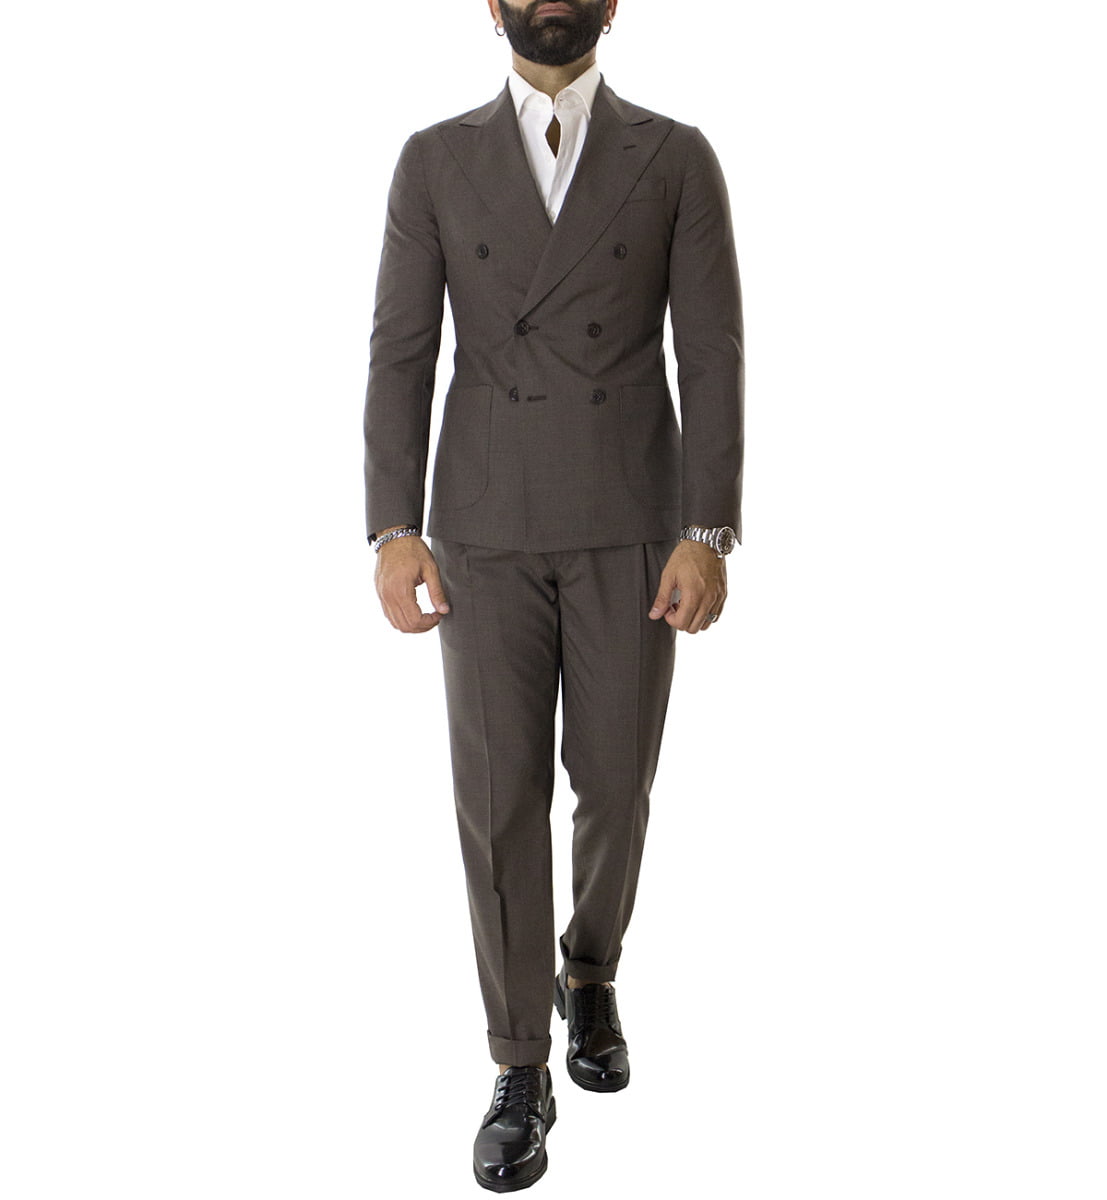 Pantalone uomo marrone vita alta fresco lana con pinces fibbie laterali e risvolto 4cm